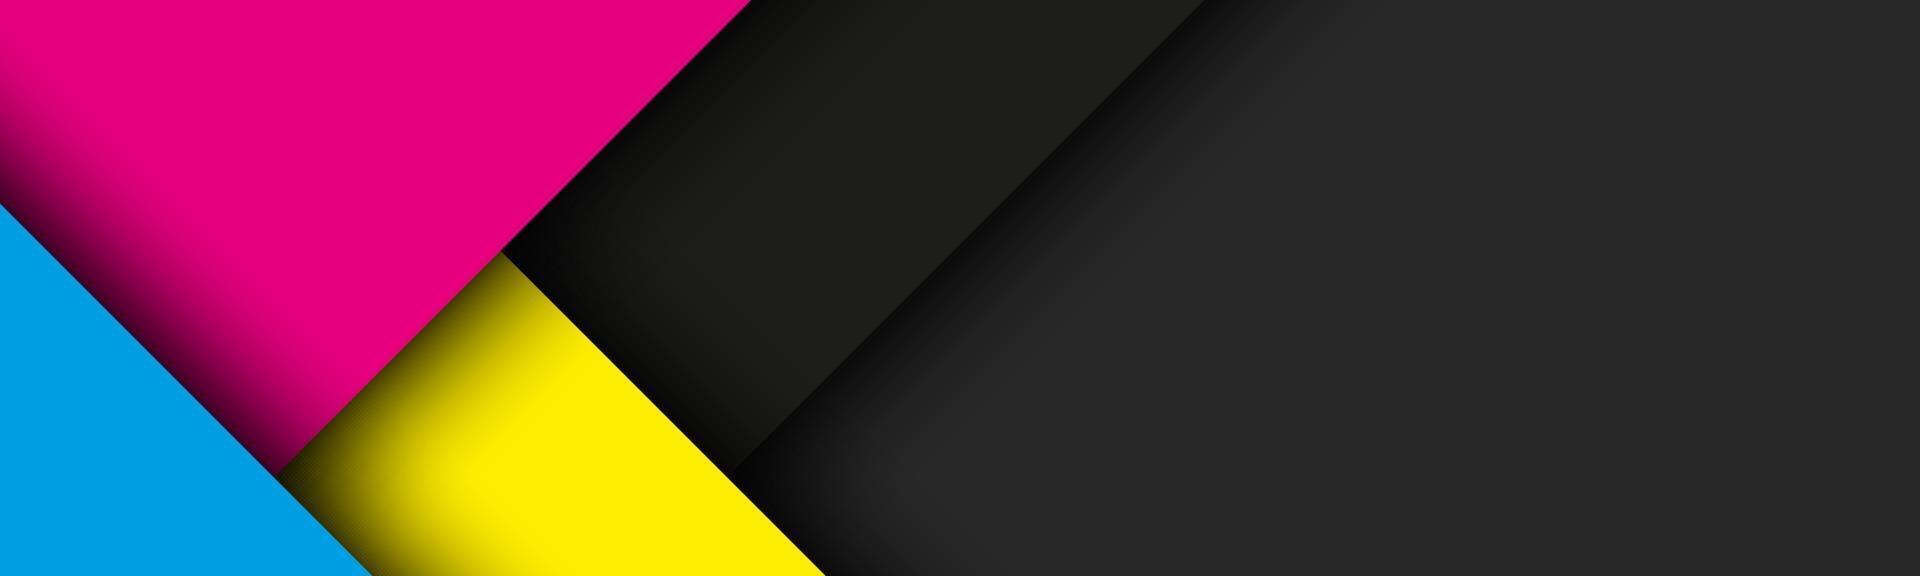 Fondo de material moderno negro con hojas de papel superpuestas en colores cmyk. plantilla para su negocio. vector de fondo de pantalla panorámica abstracta